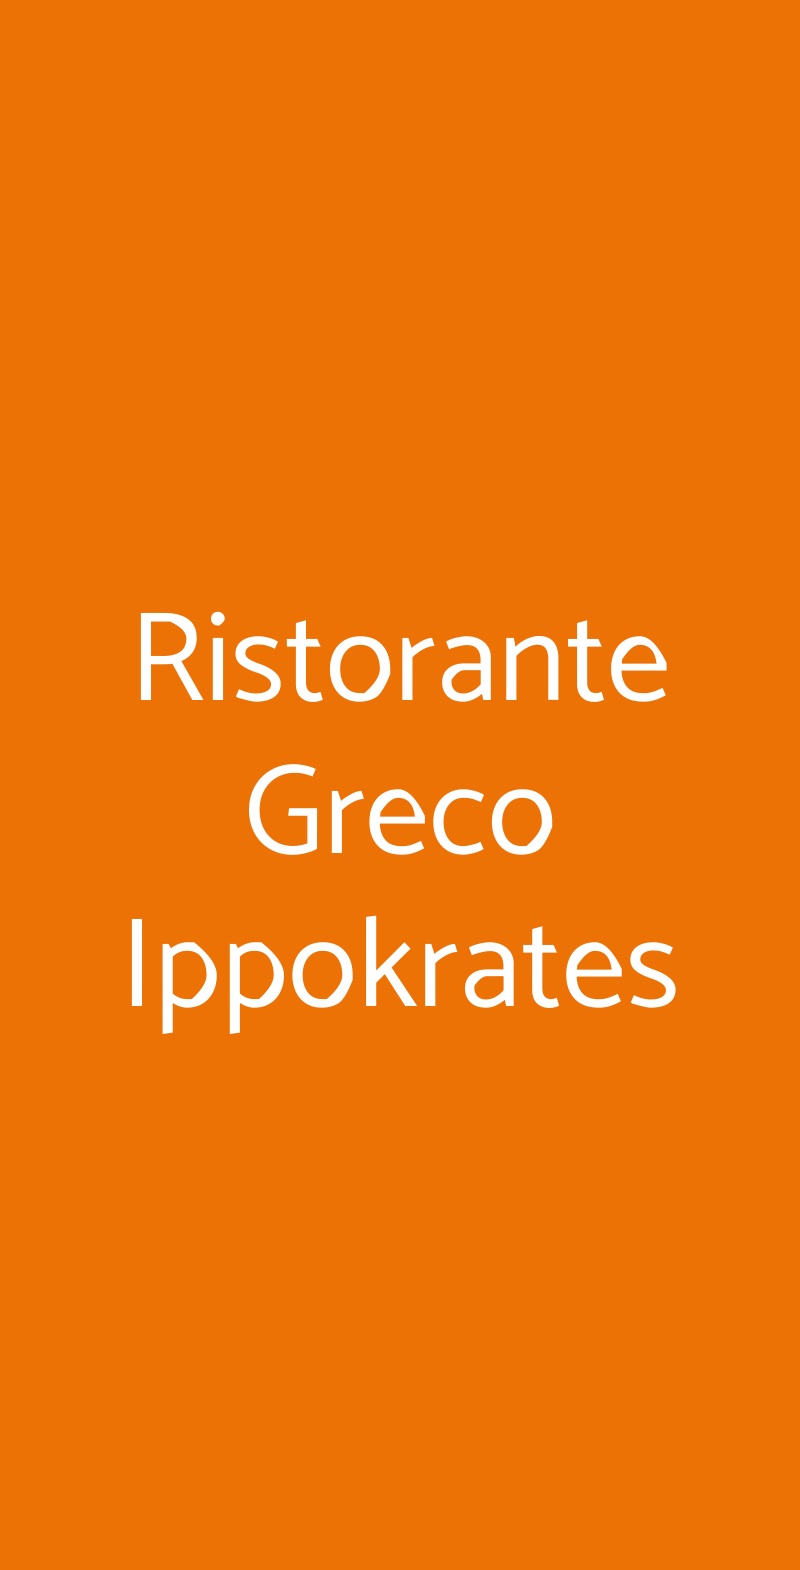 Ristorante Greco Ippokrates Roma menù 1 pagina